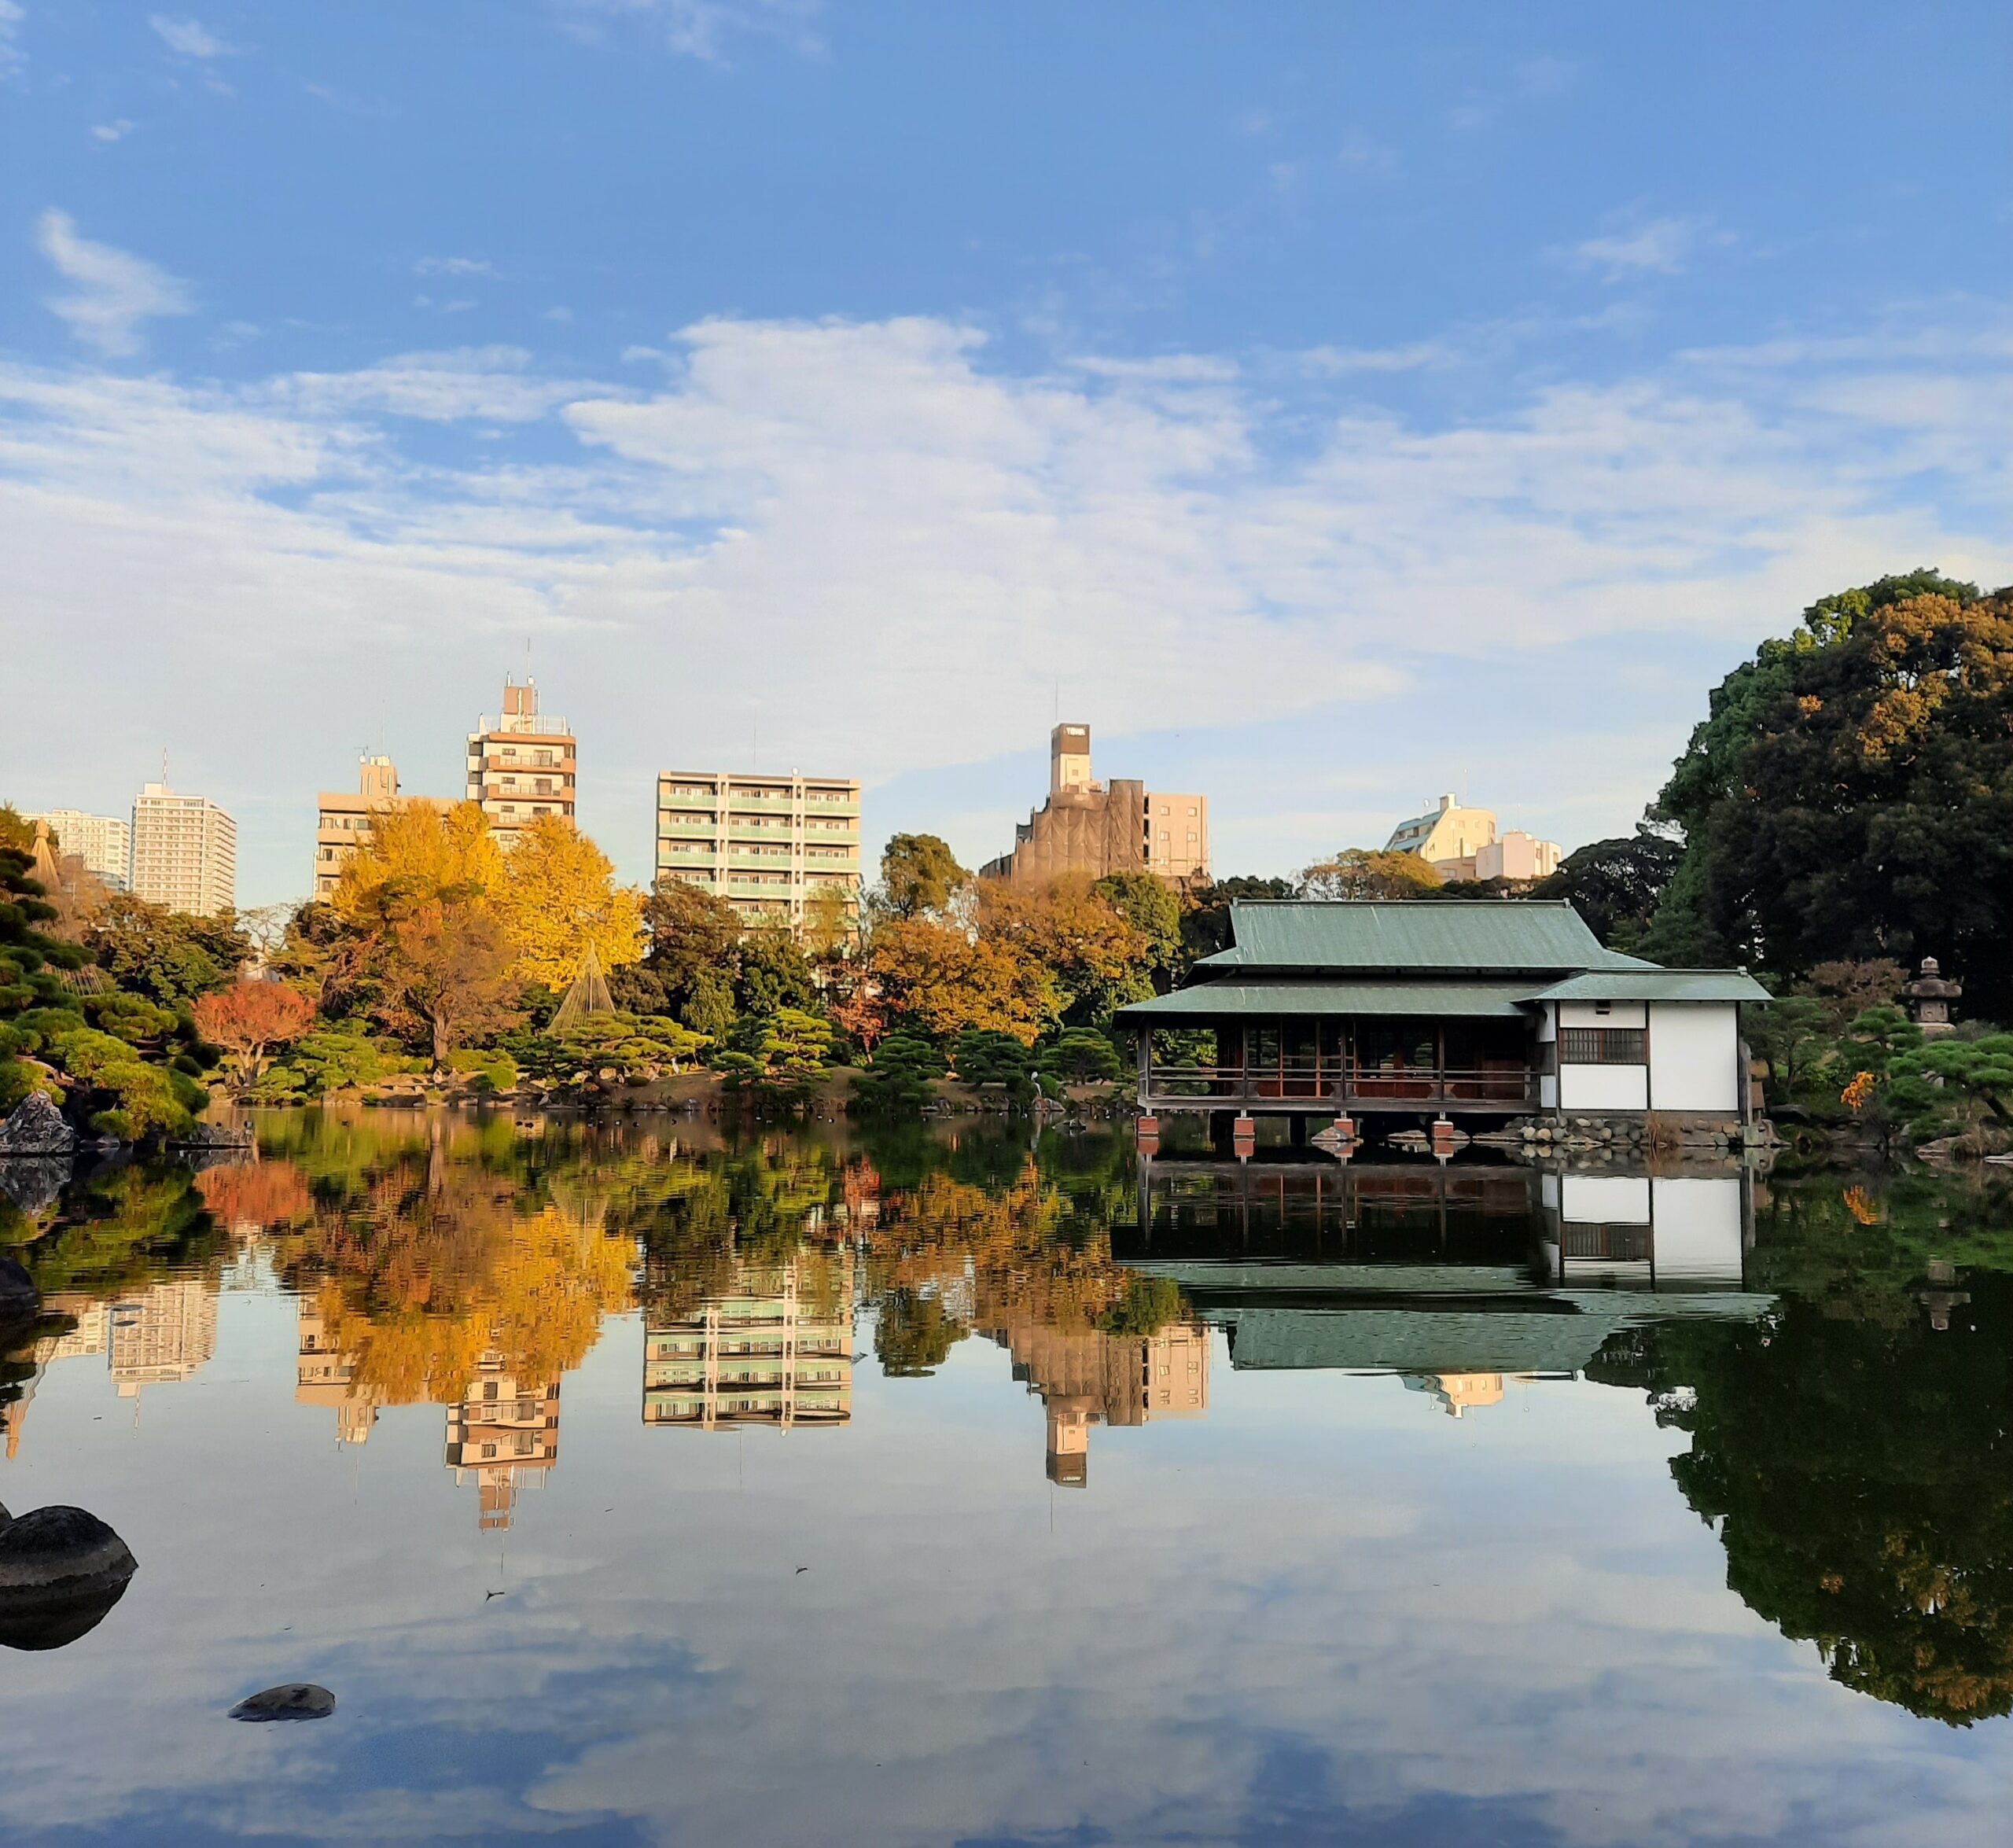 Kiyosumi Garten: Kontrast zwischen Tradition und Moderne